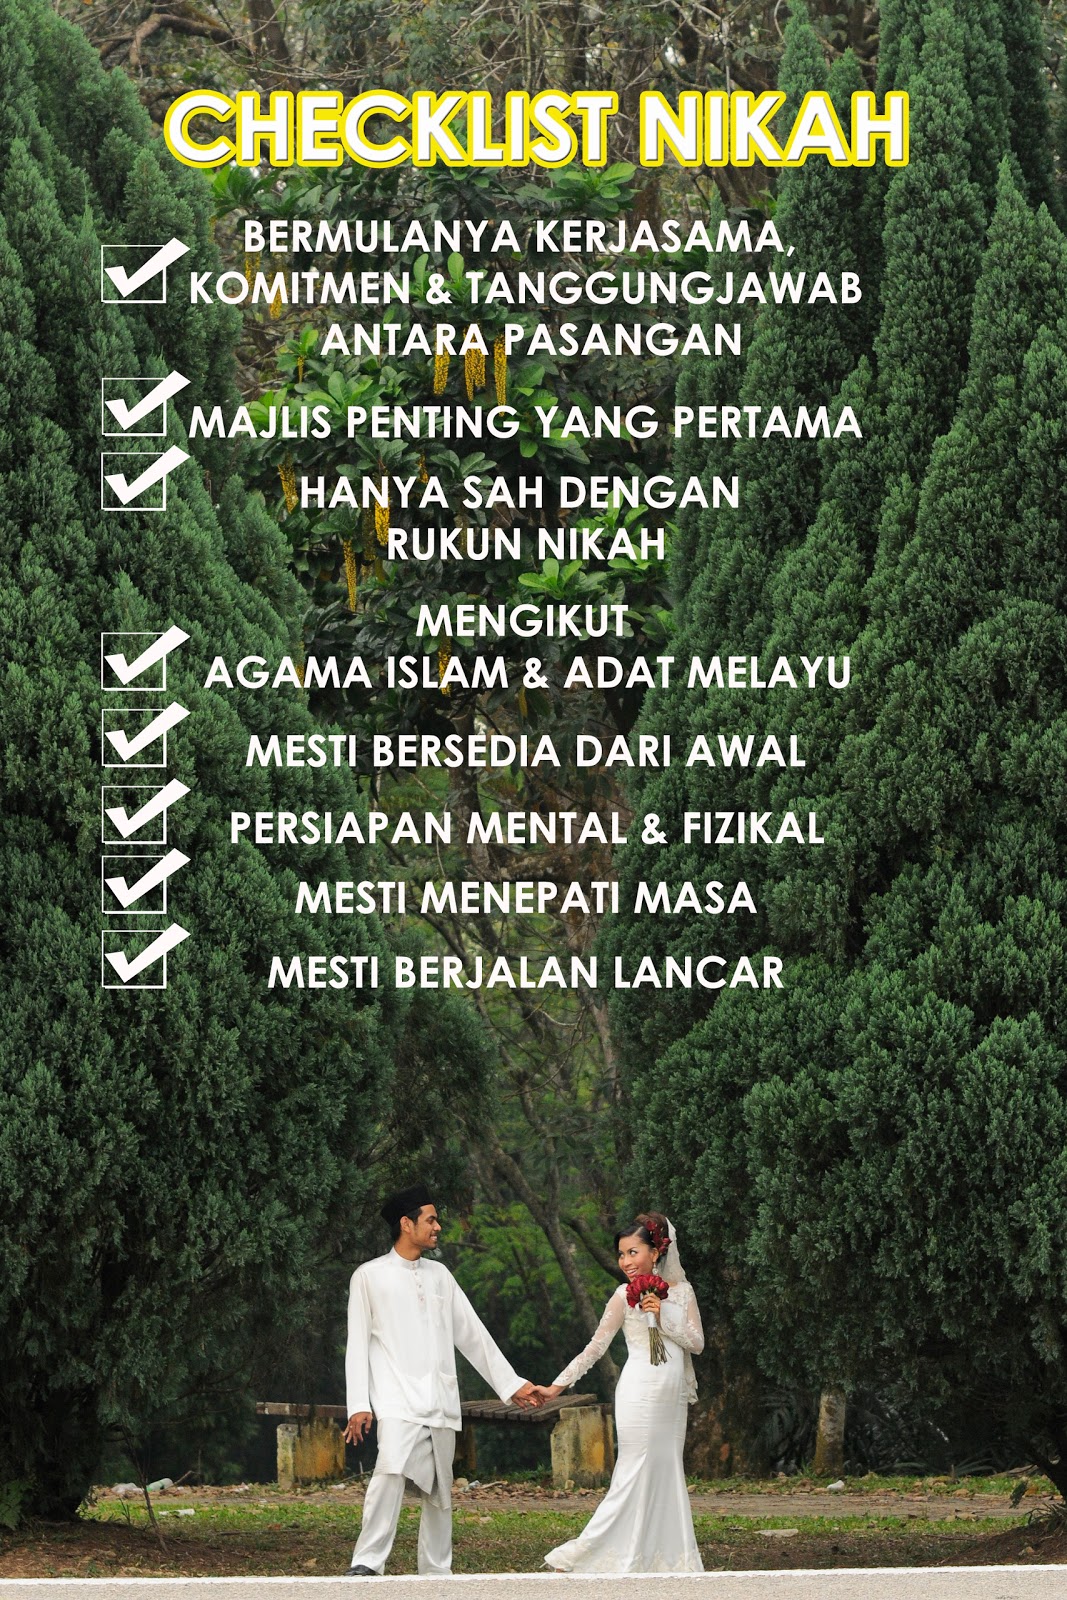 Bajet Wedding Checklist Nikah Persiapan Majlis Pernikahan Yang Betul